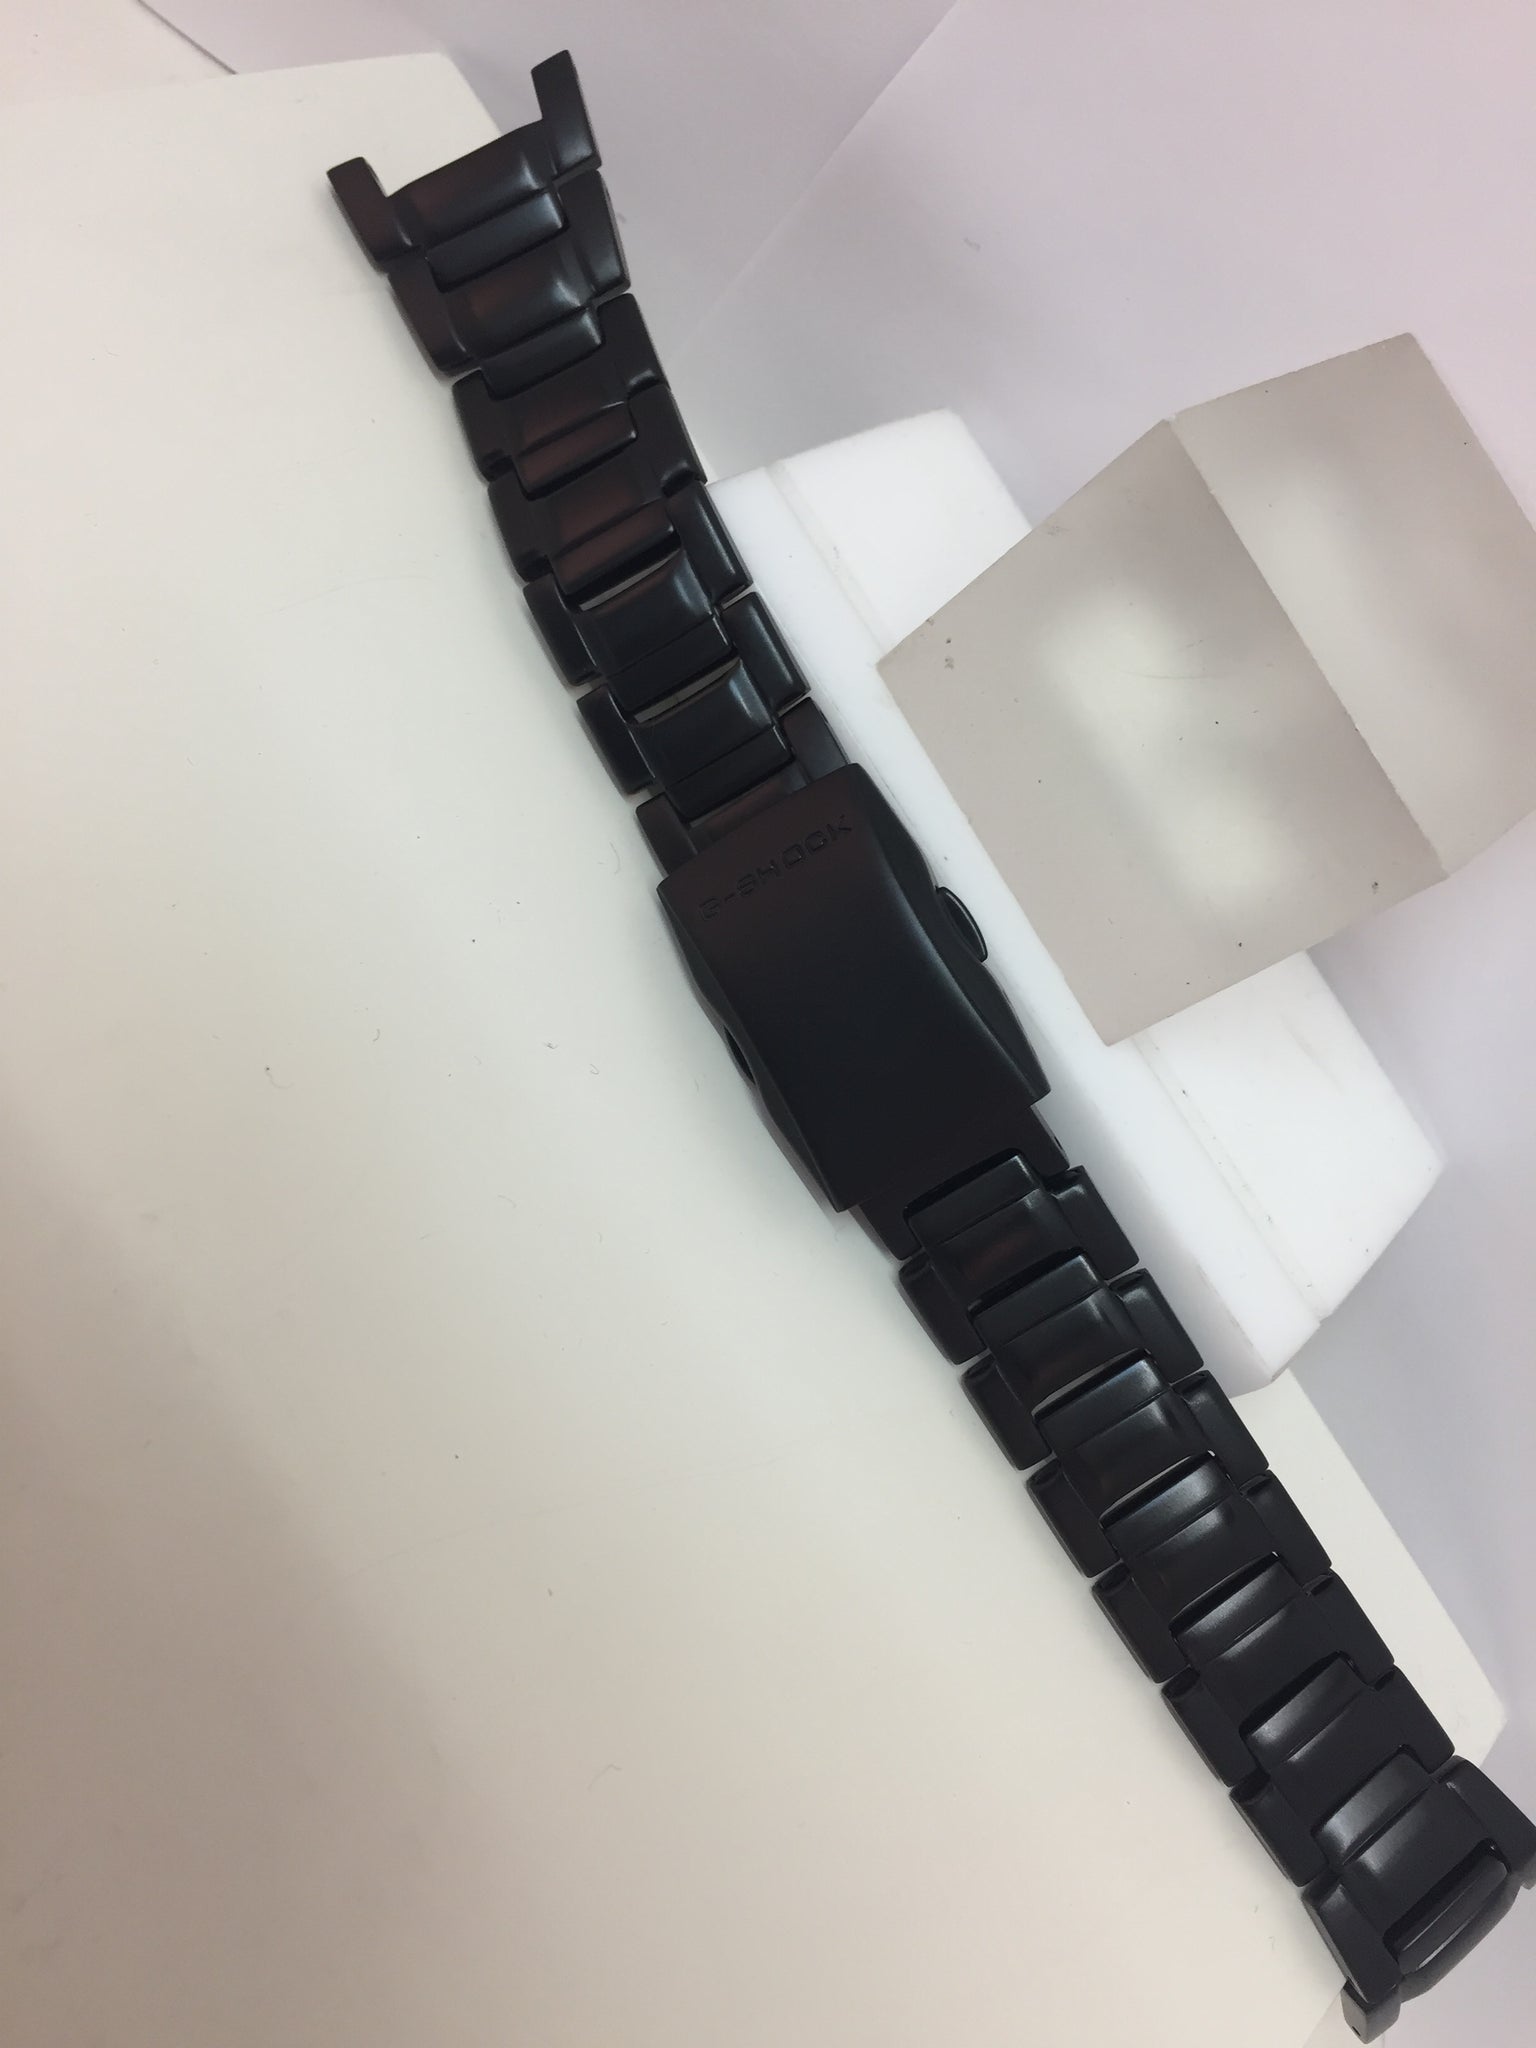 Casio Watchband/Bracelet G-501,G-800,GW-810,S-112L.Blk PVD Steel.Push But Deploy